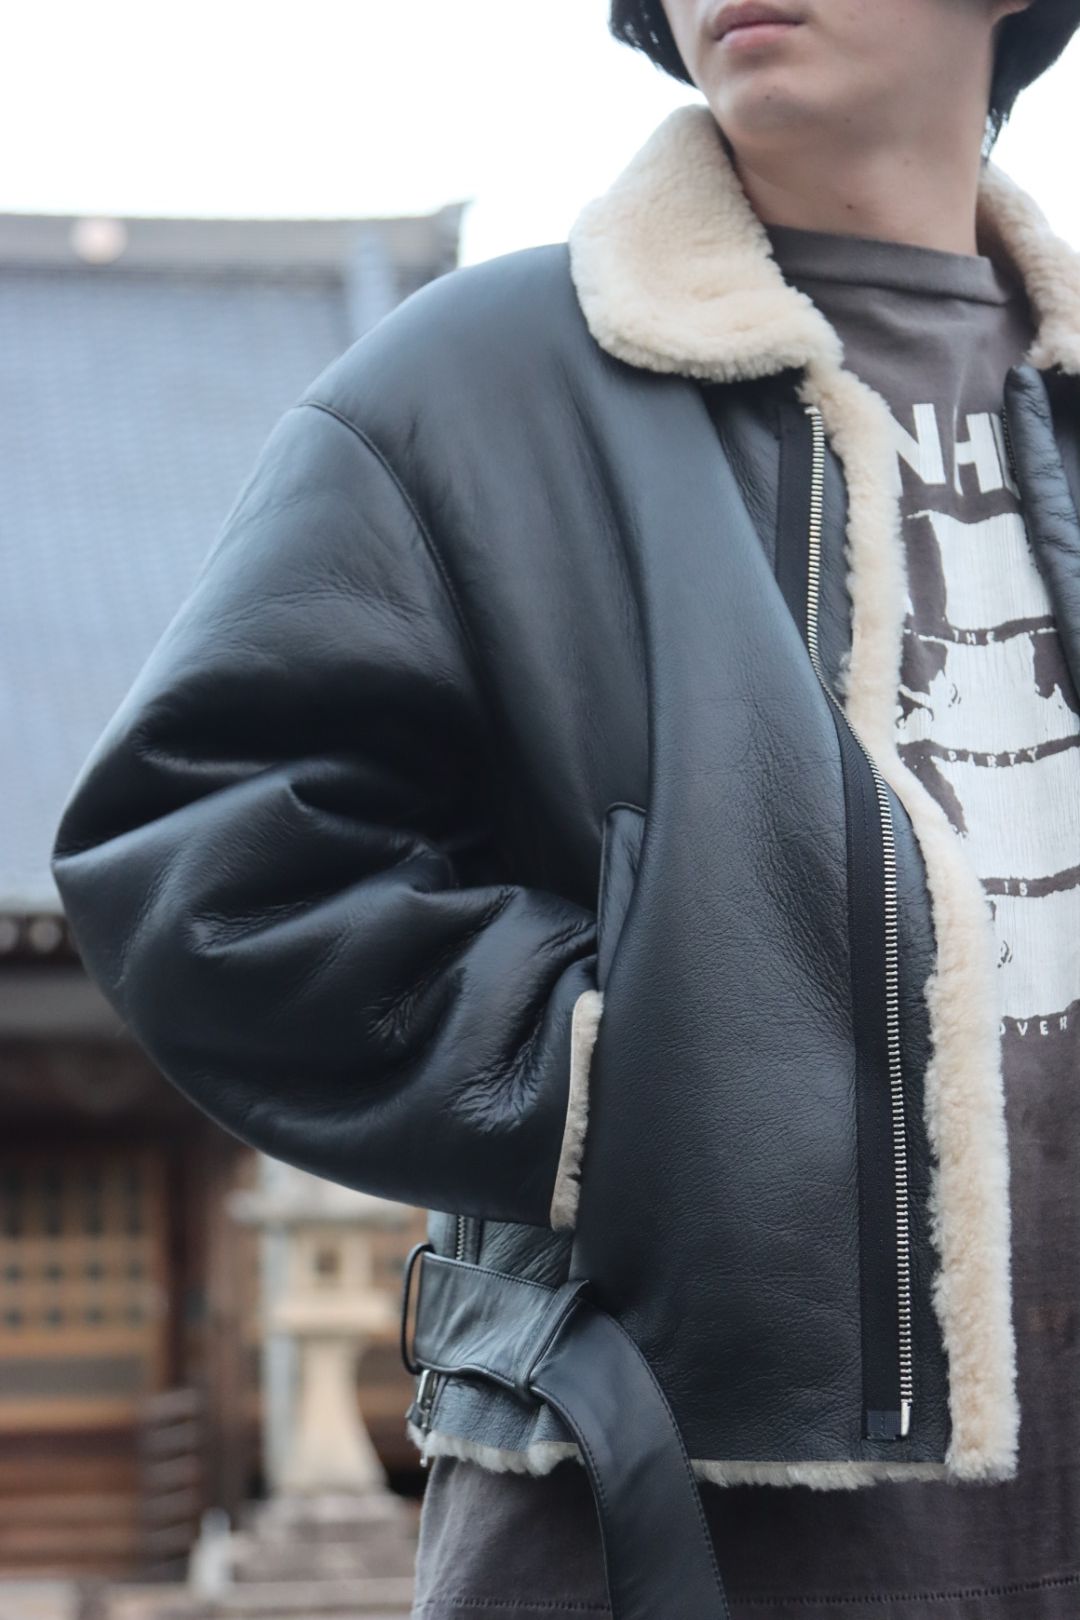 新入荷品 YOKE OVERSIZED BONBER JACKET サイズ3 レザージャケット